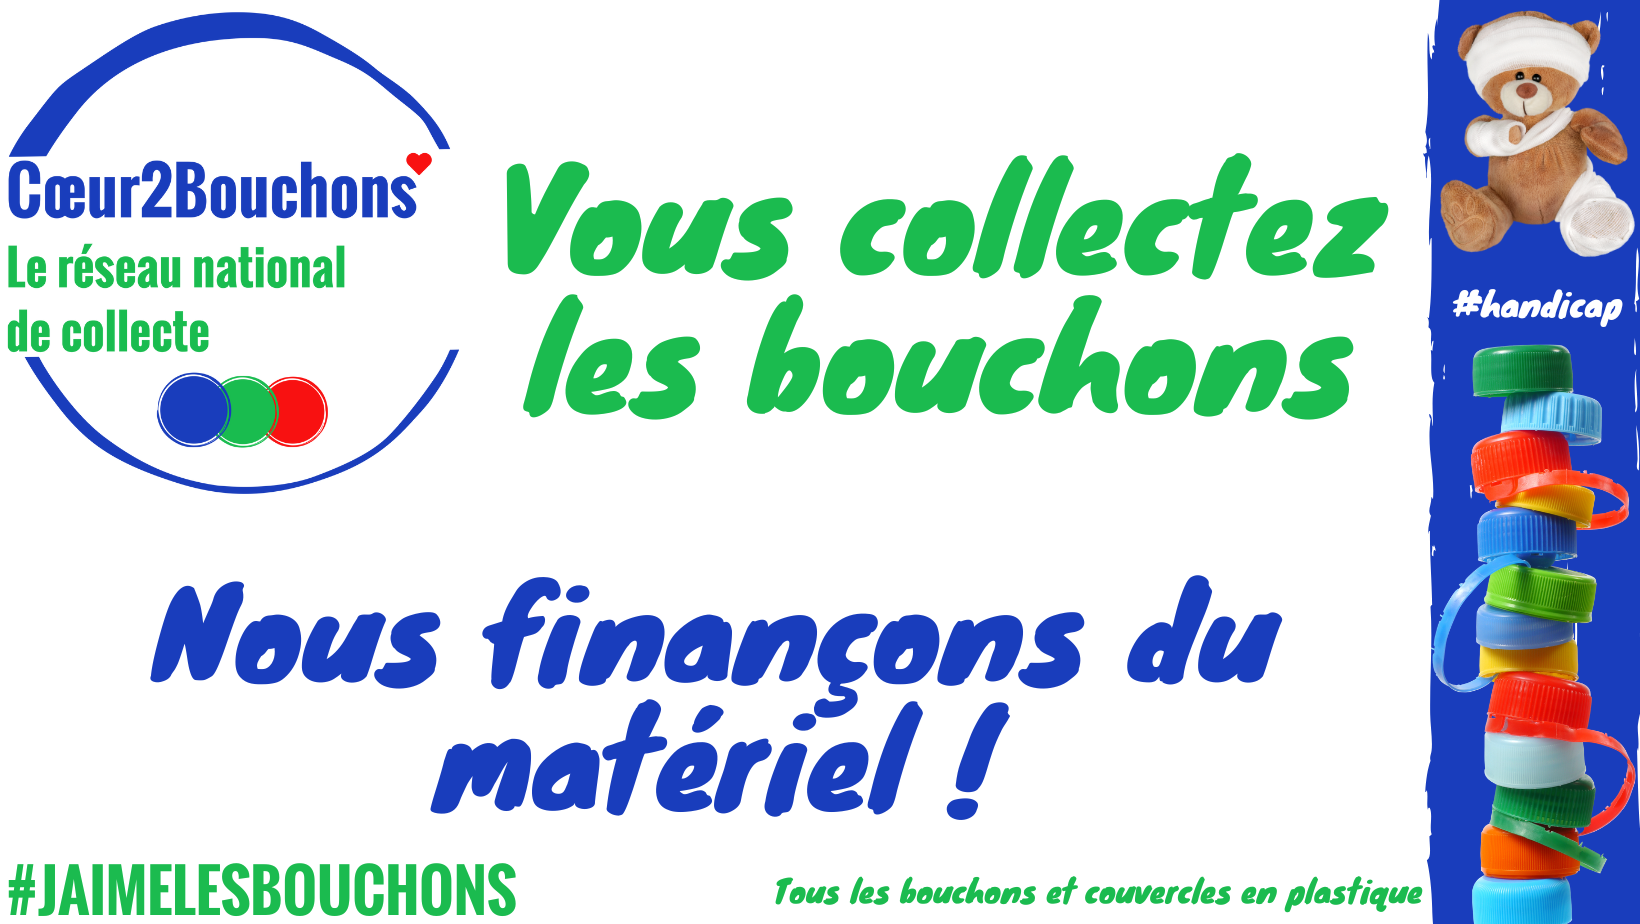 Collecte et recyclage de bouchons en plastique Association Coeur2Bouchons